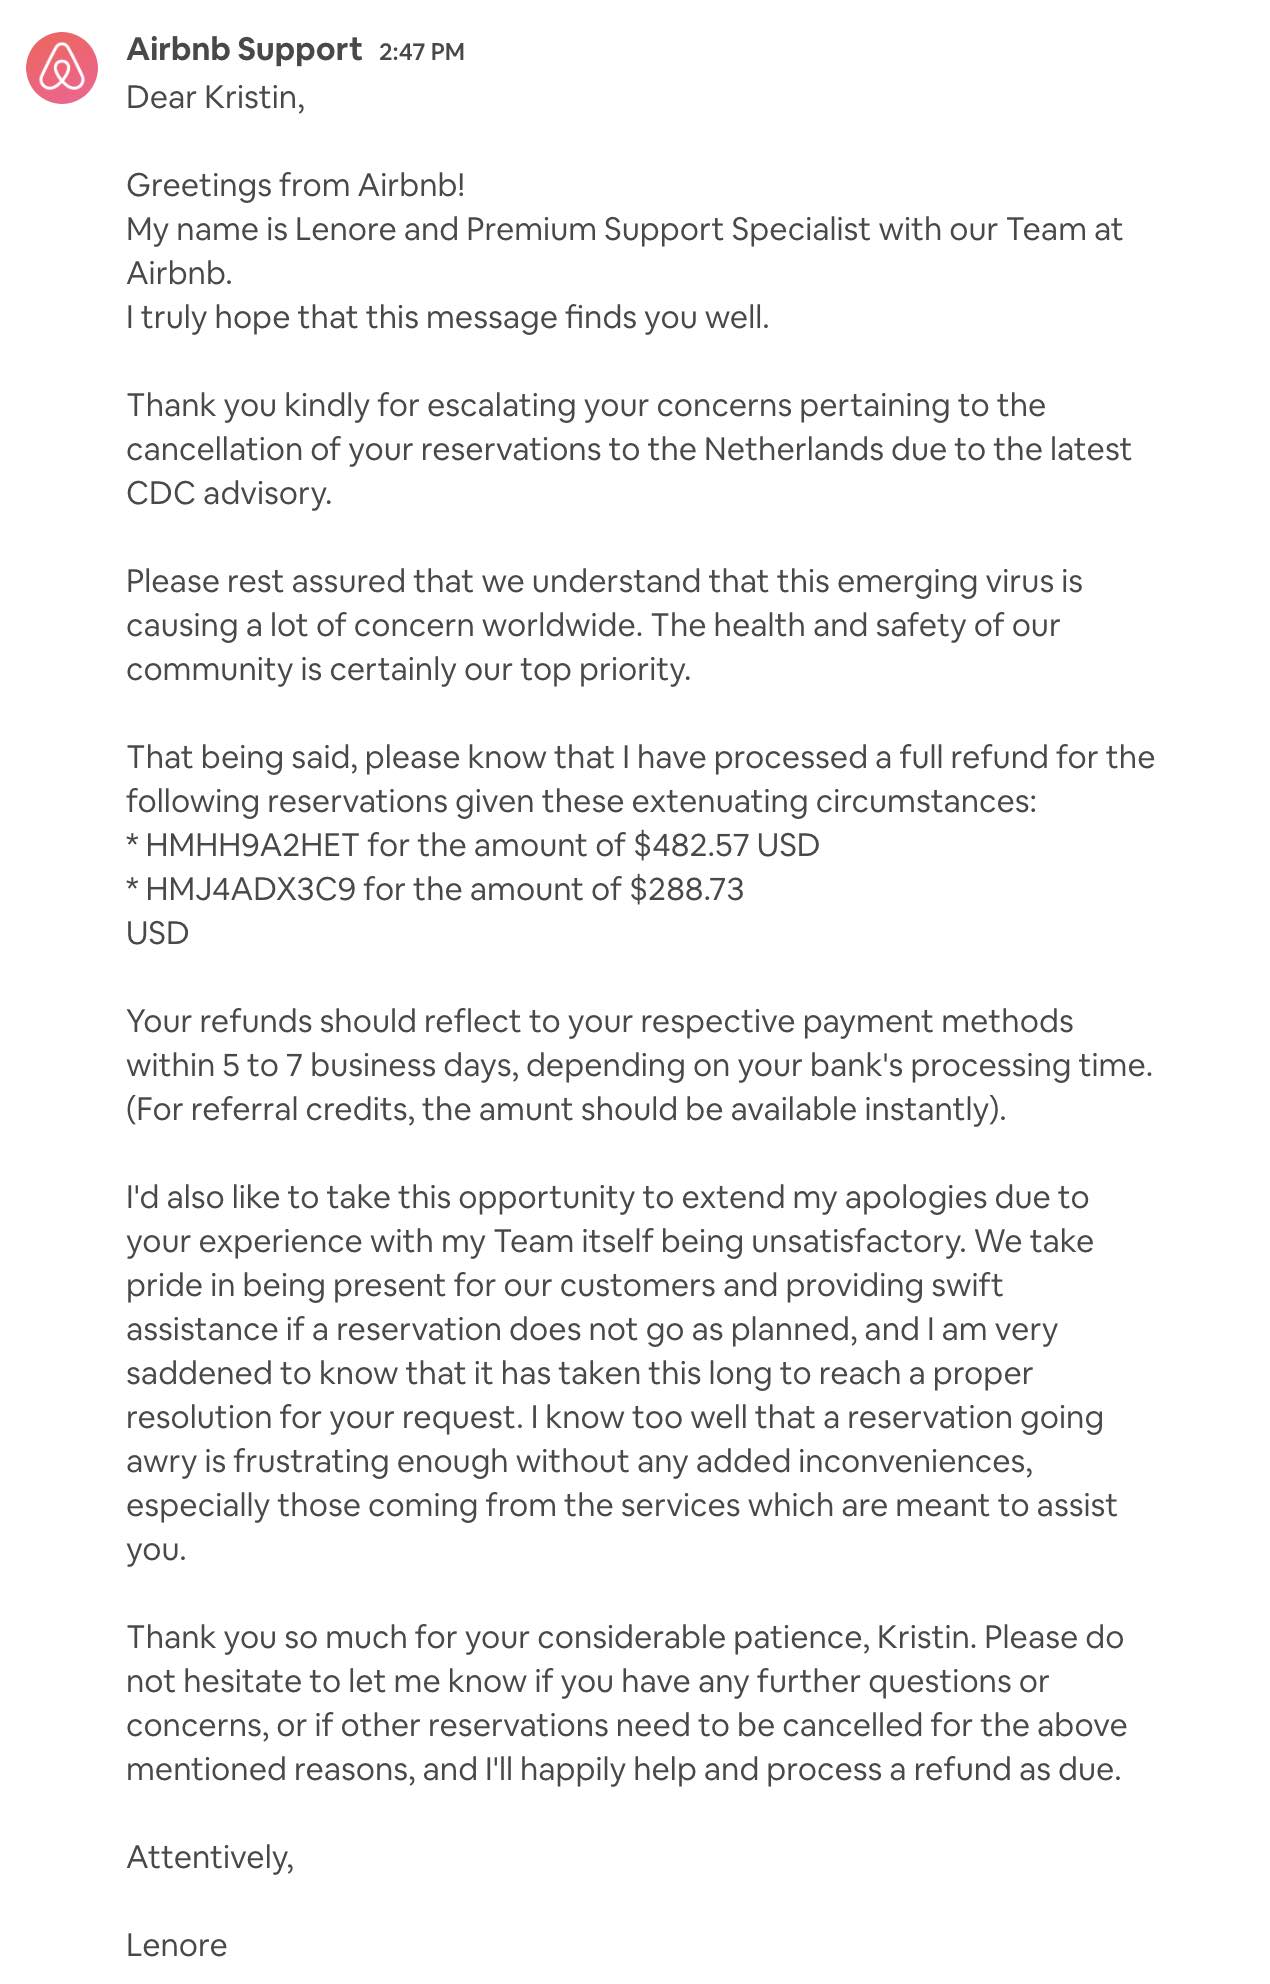 Airbnb apology during coronavirus